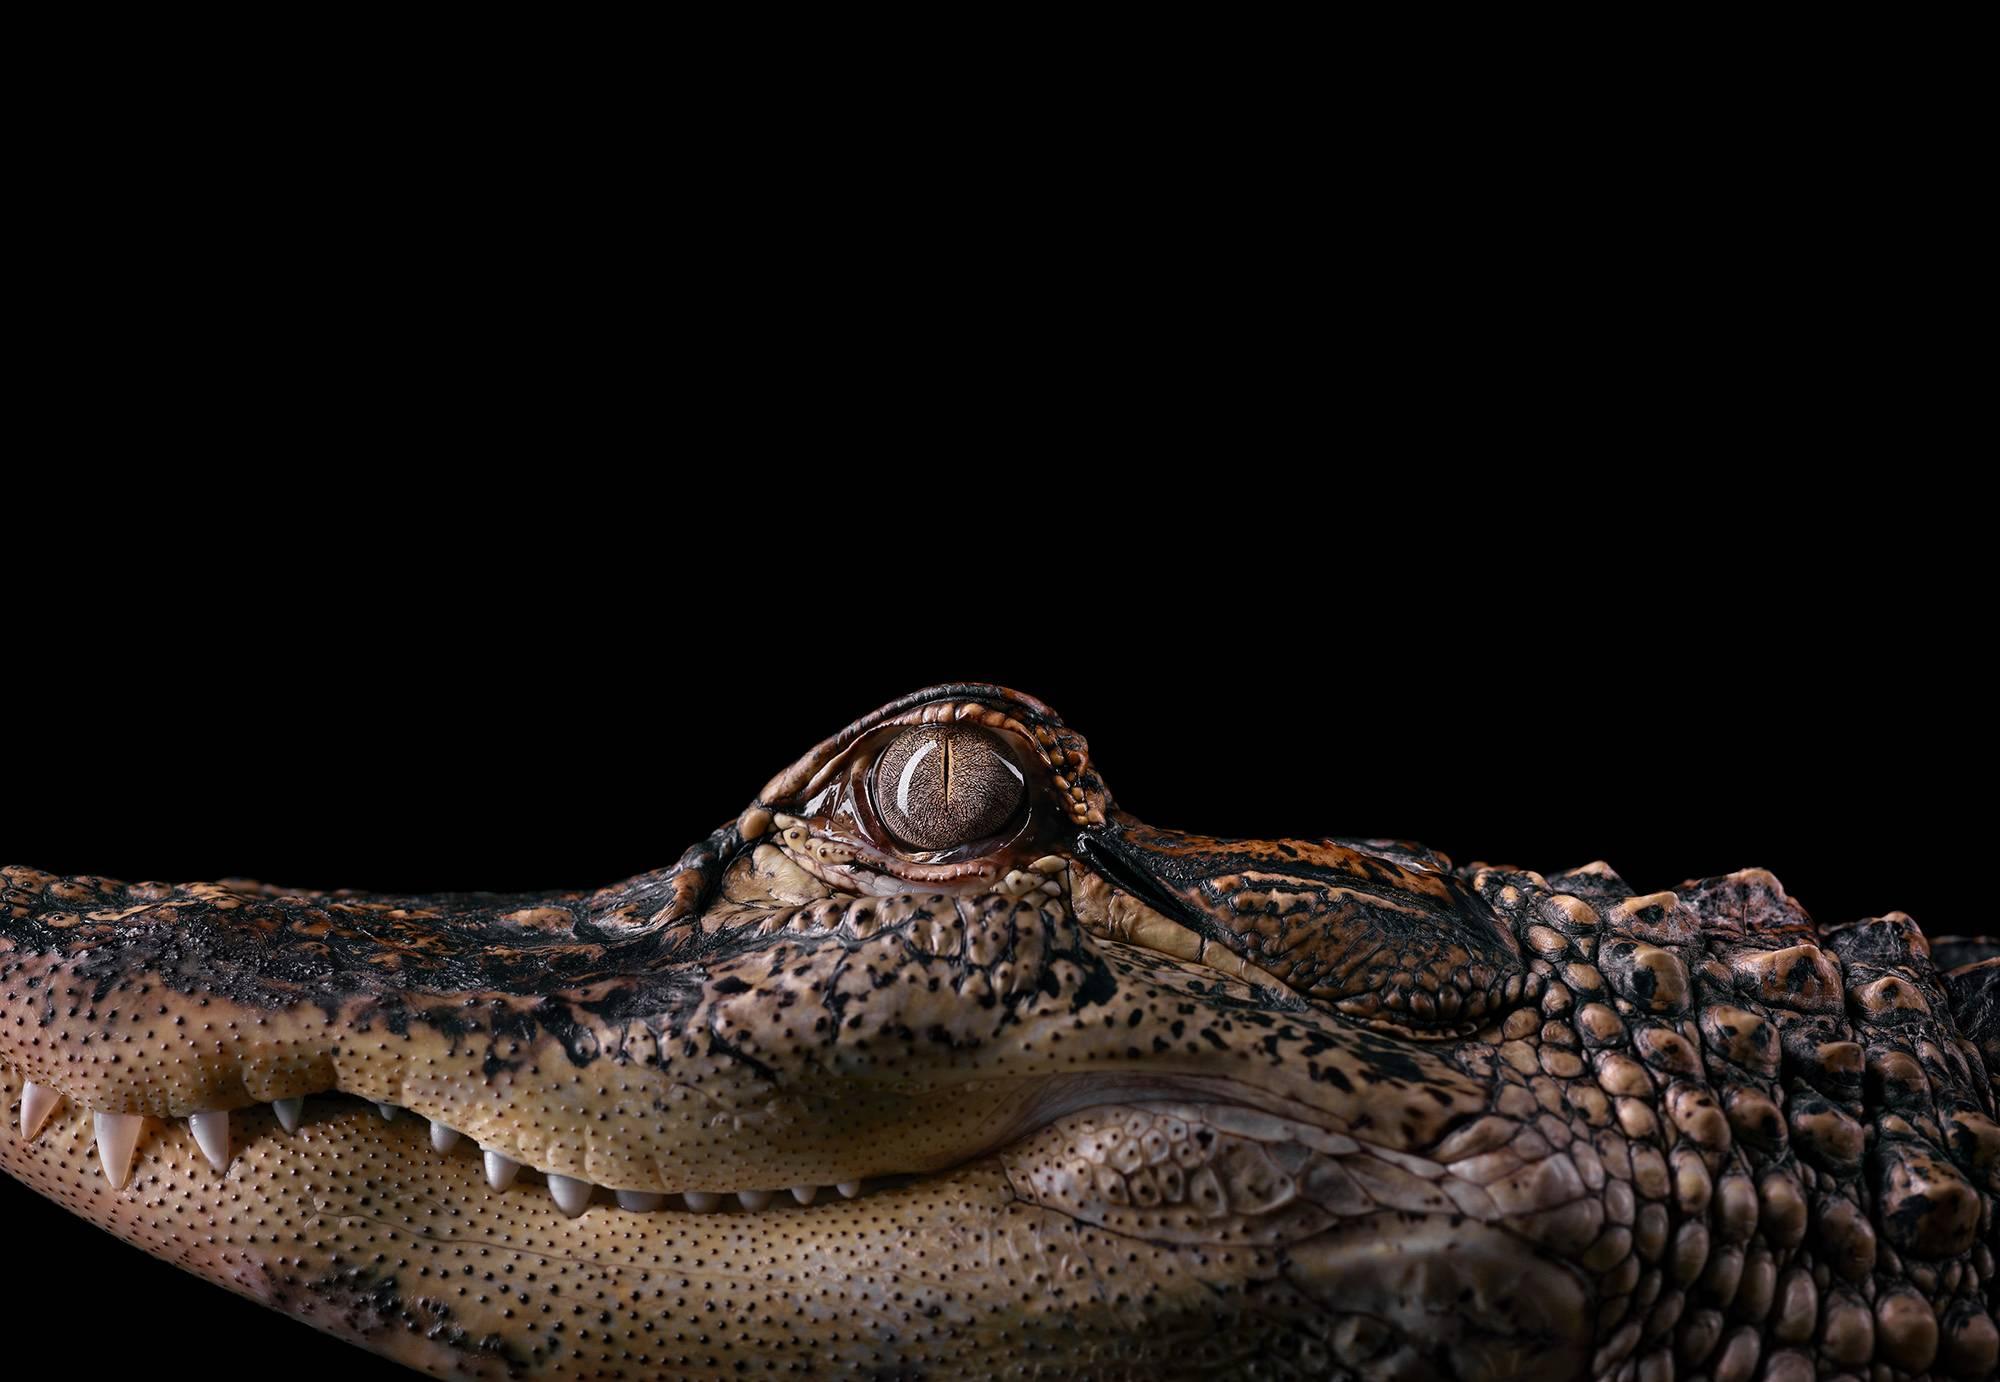 Brad Wilson Color Photograph - Alligator #2, Los Angeles, CA